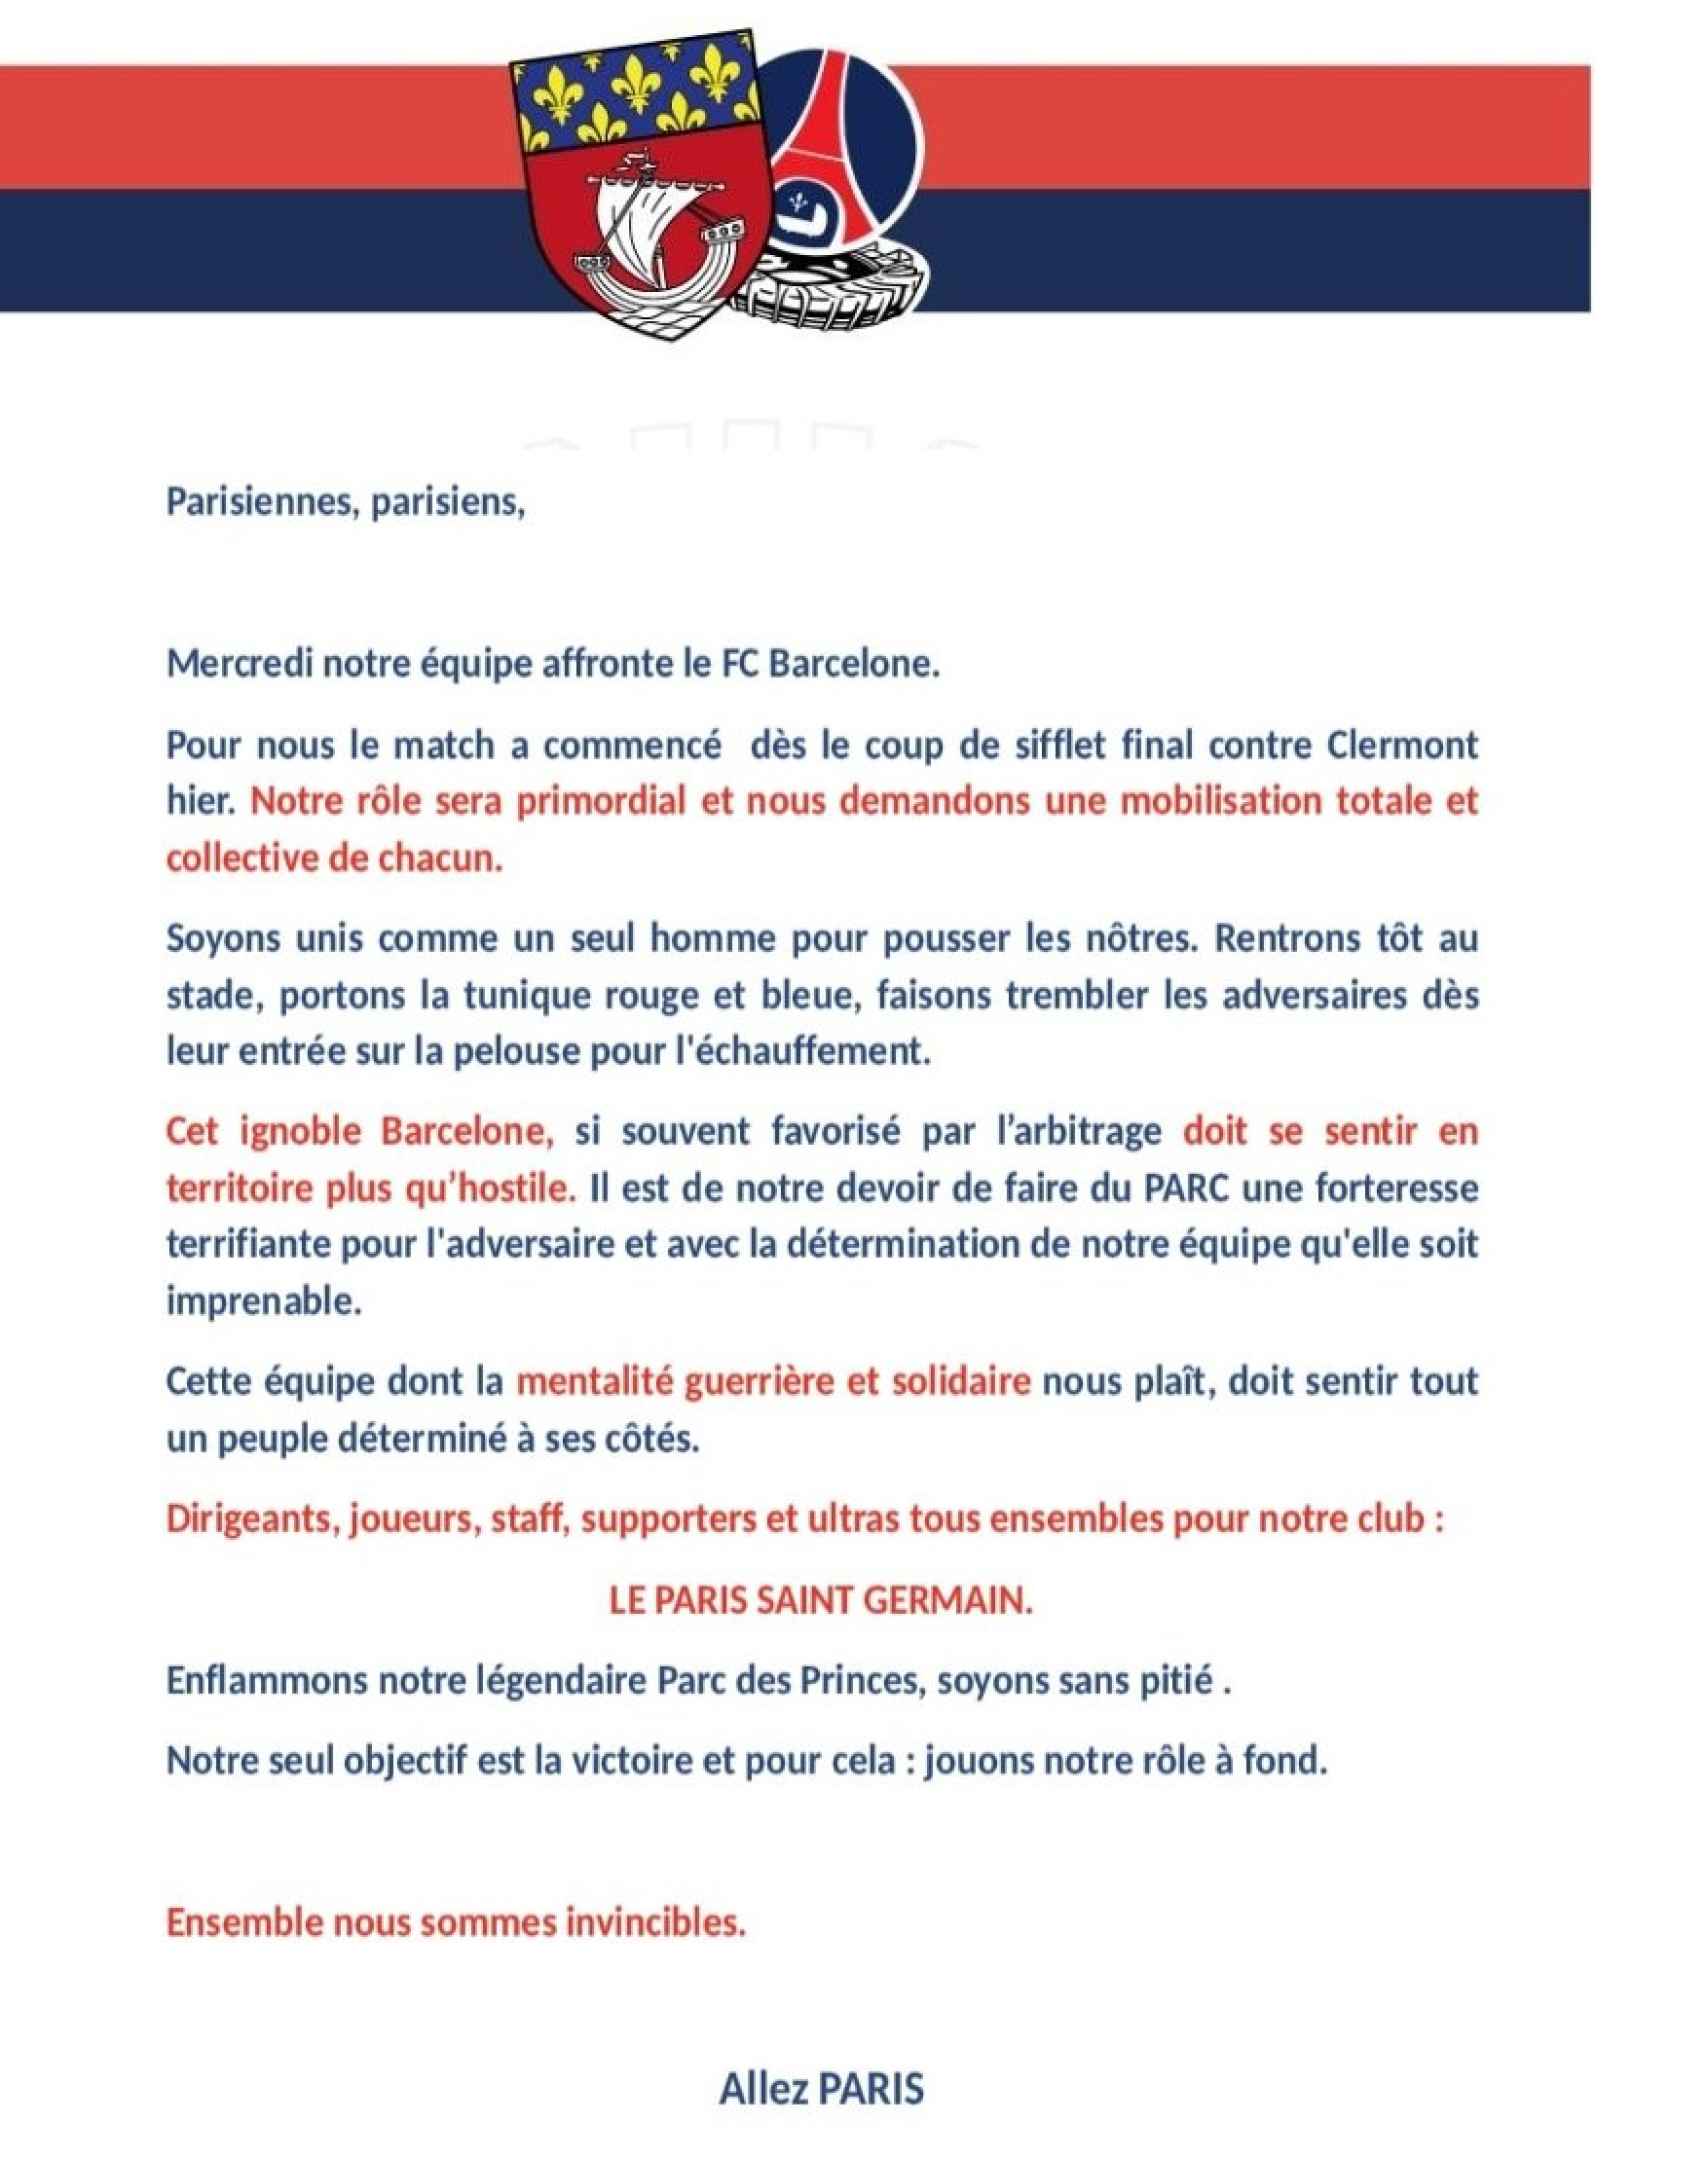 Los ultras del PSG emiten un comunicado hostil contra el Barça